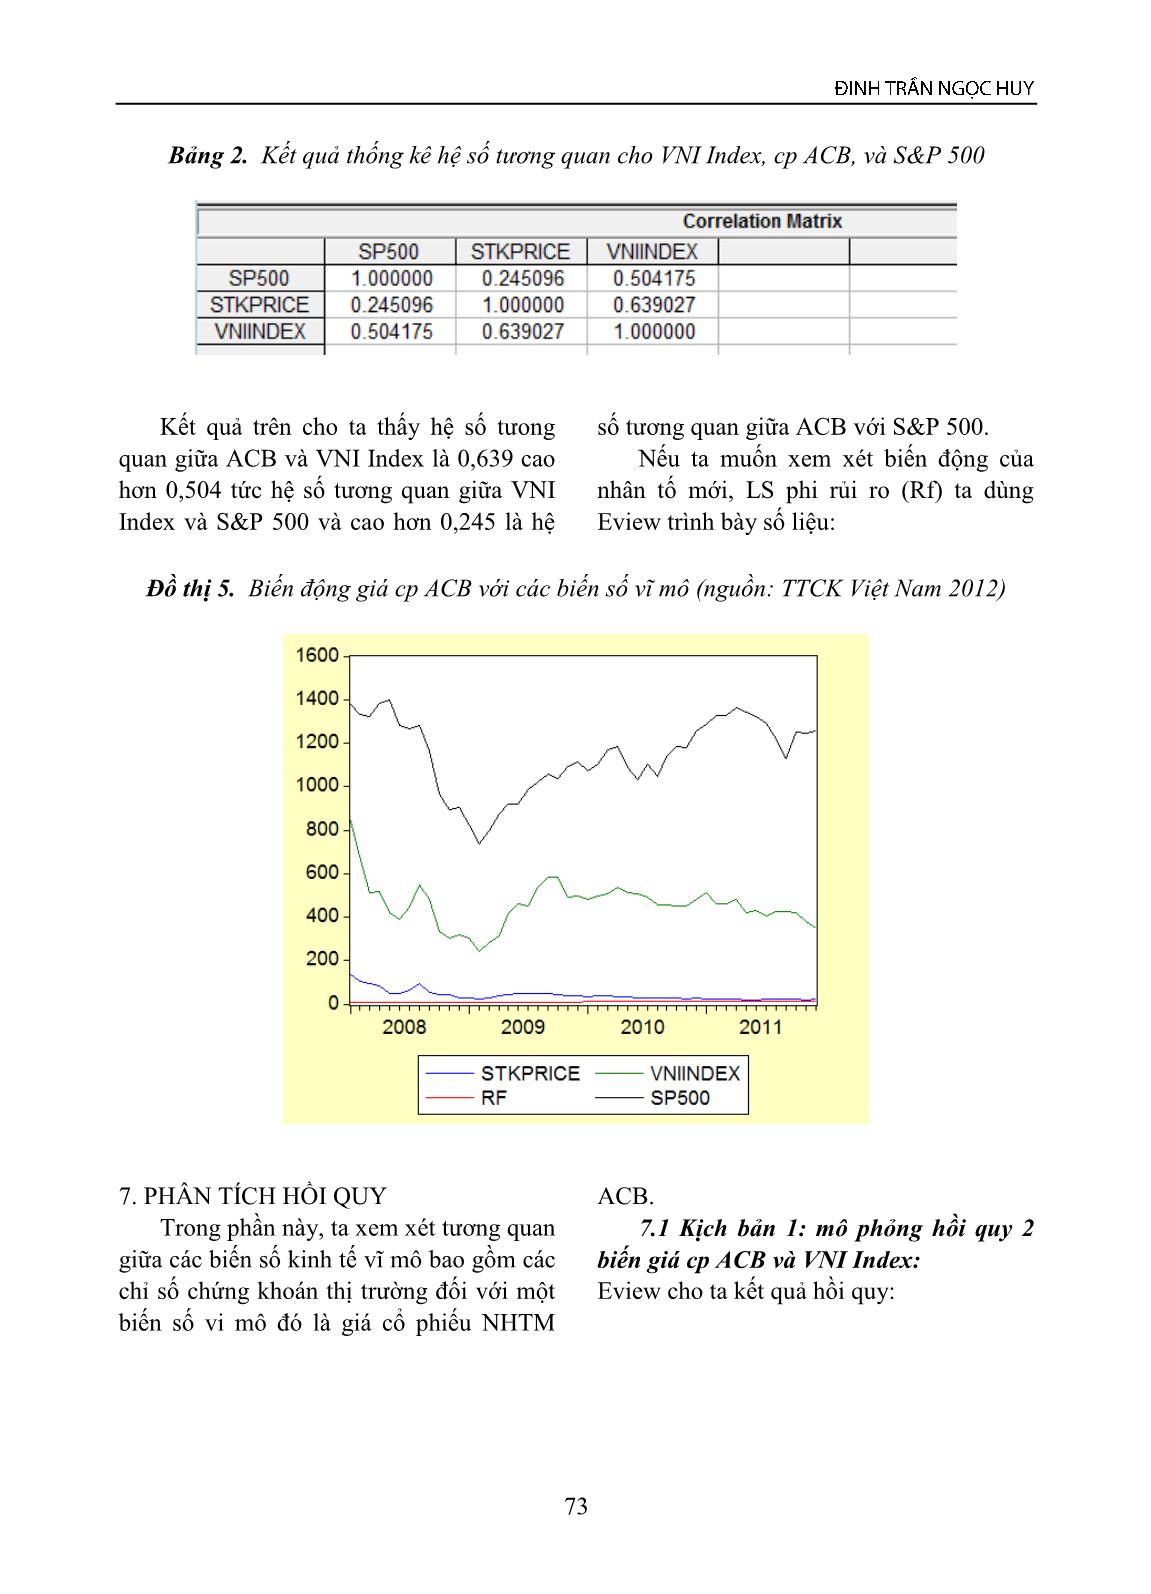 Mô hình kinh tế lượng cho giá chứng khoán thời kỳ 2008-2011 - trường hợp giá cổ phiếu ACB, VNI INDEX, LS phi rủi ro và S&P 500 trang 7